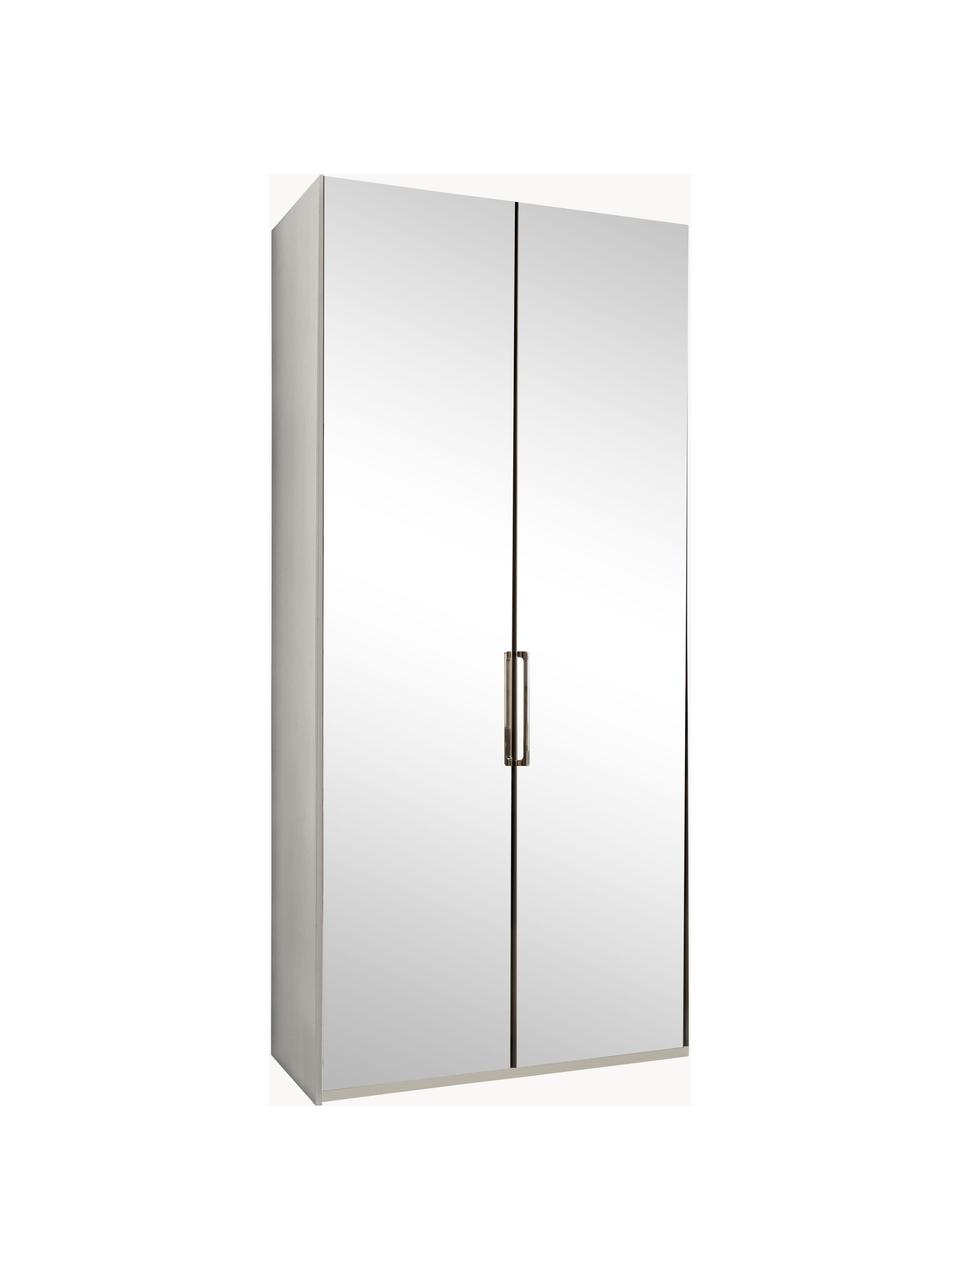 Draaideurkast Monaco met 2 spiegeldeuren, Handvatten: gecoat metaal, Wit, met spiegeldeuren, B 100 x H 216 cm